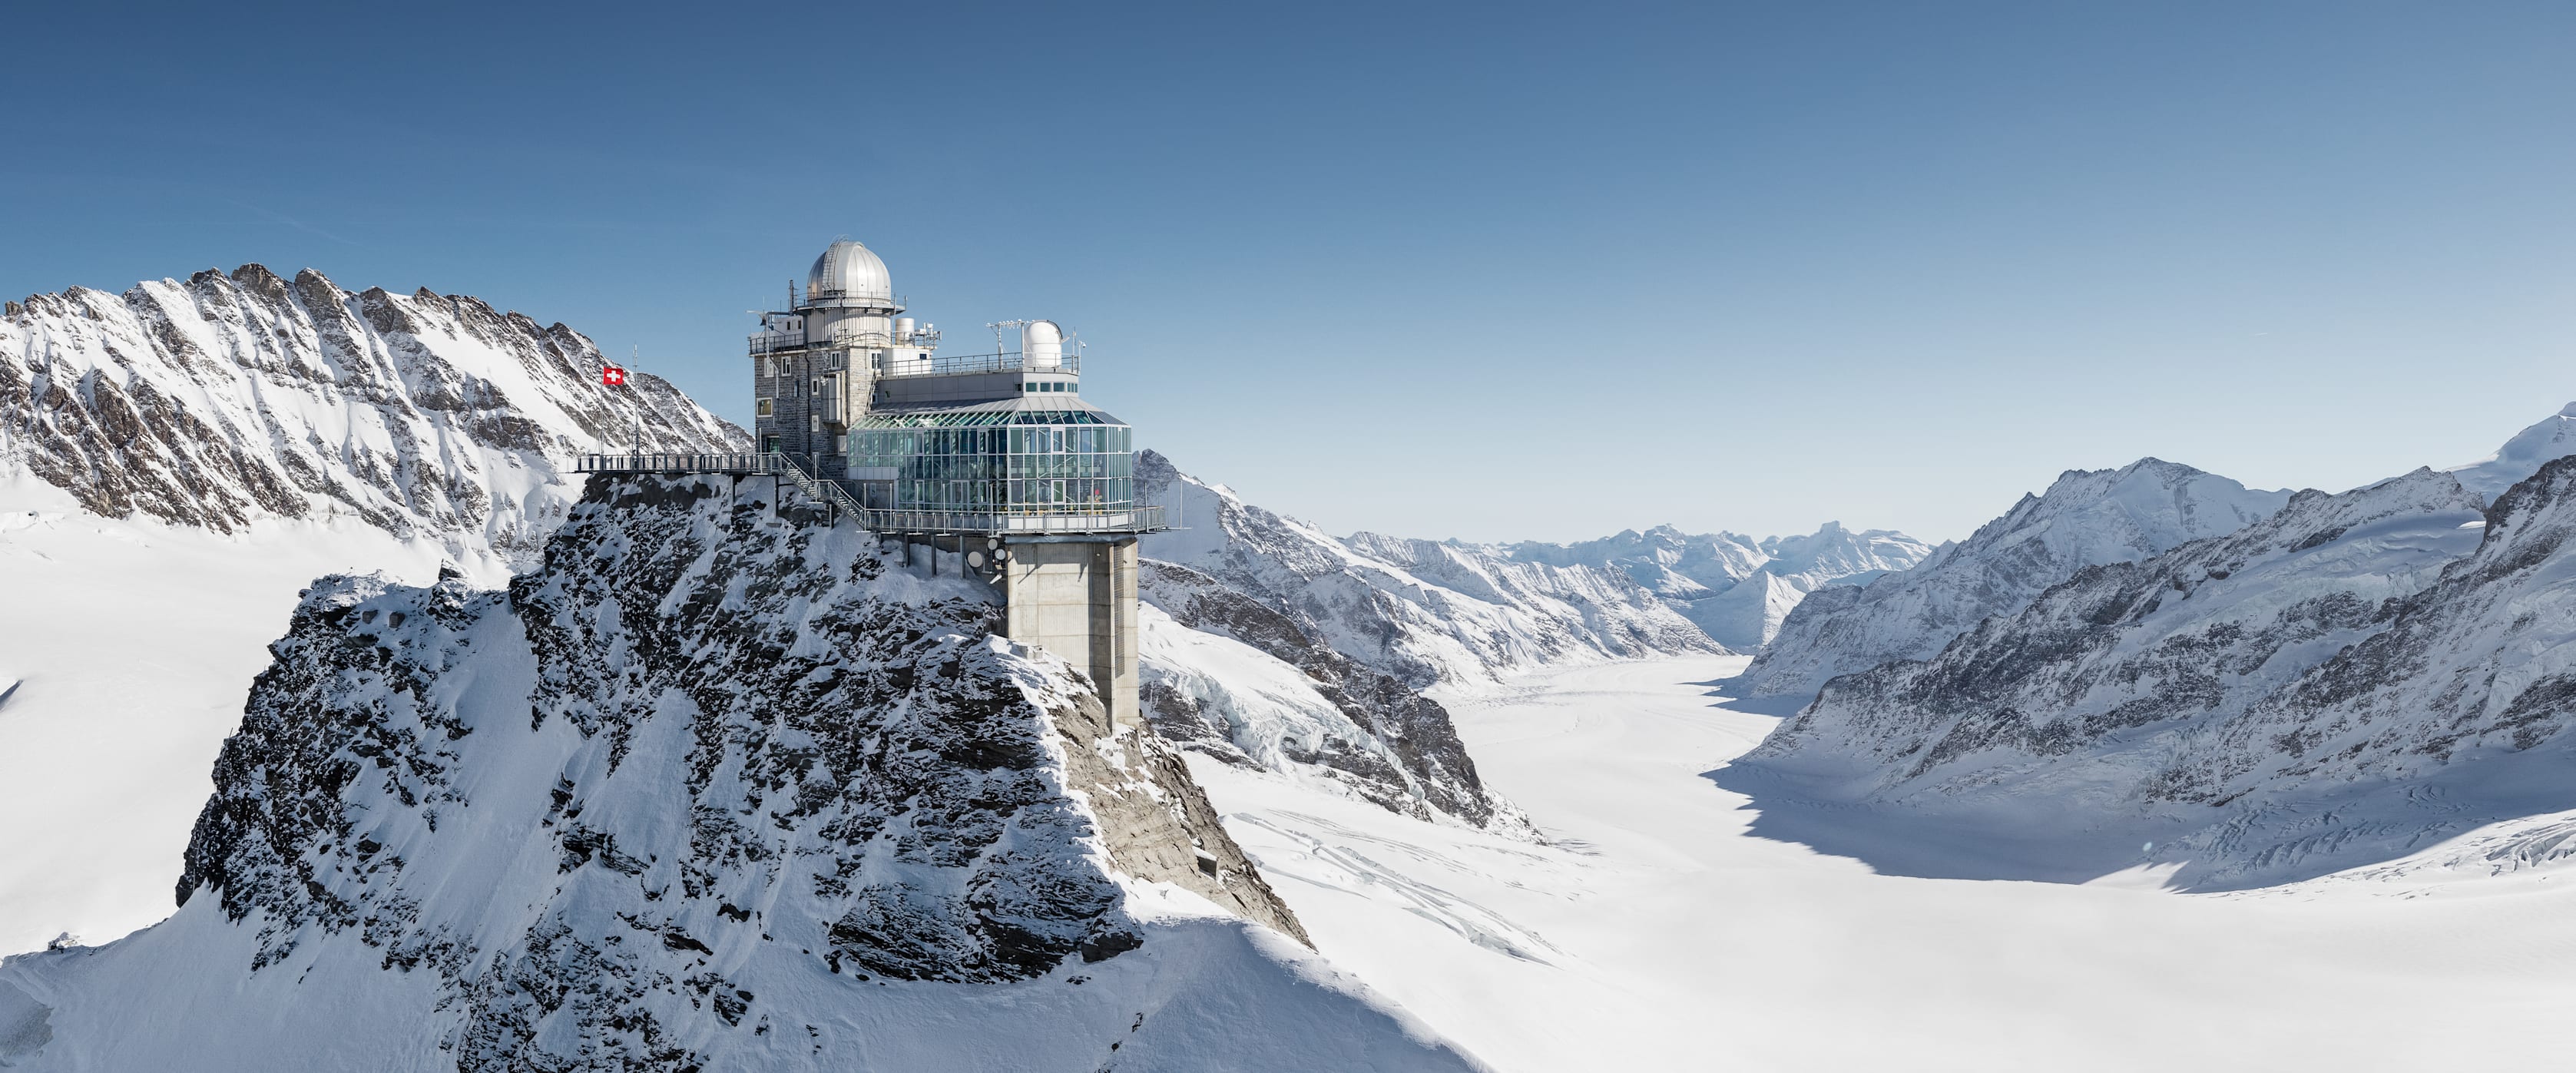 Jungfraujoch Top of Europe jungfrau.ch